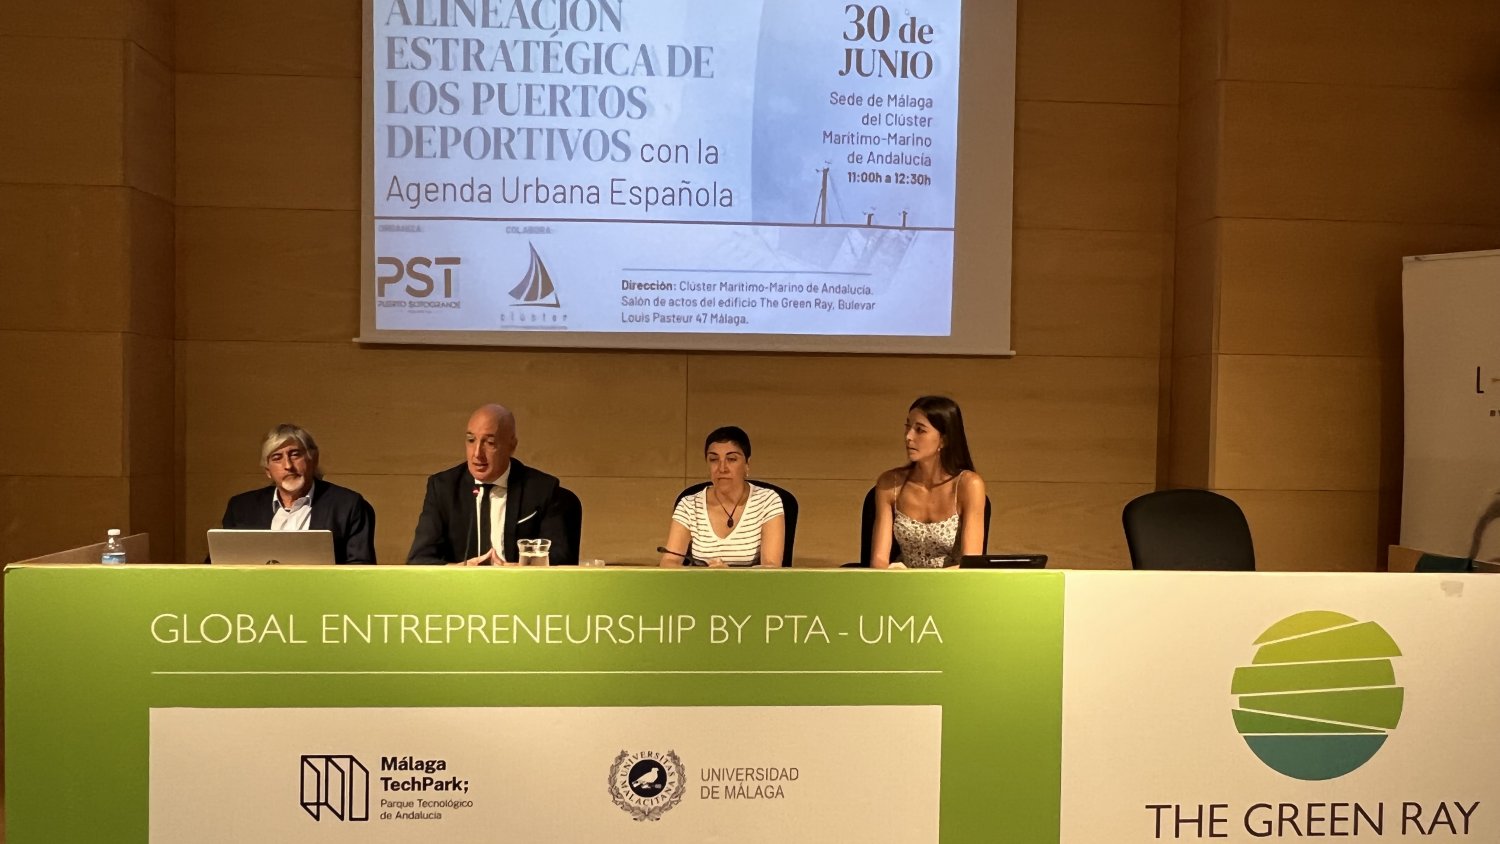 Puerto Sotogrande expone su alineación estratégica con la Agenda Urbana Española en el Clúster Marítimo-Marino de Andalucía